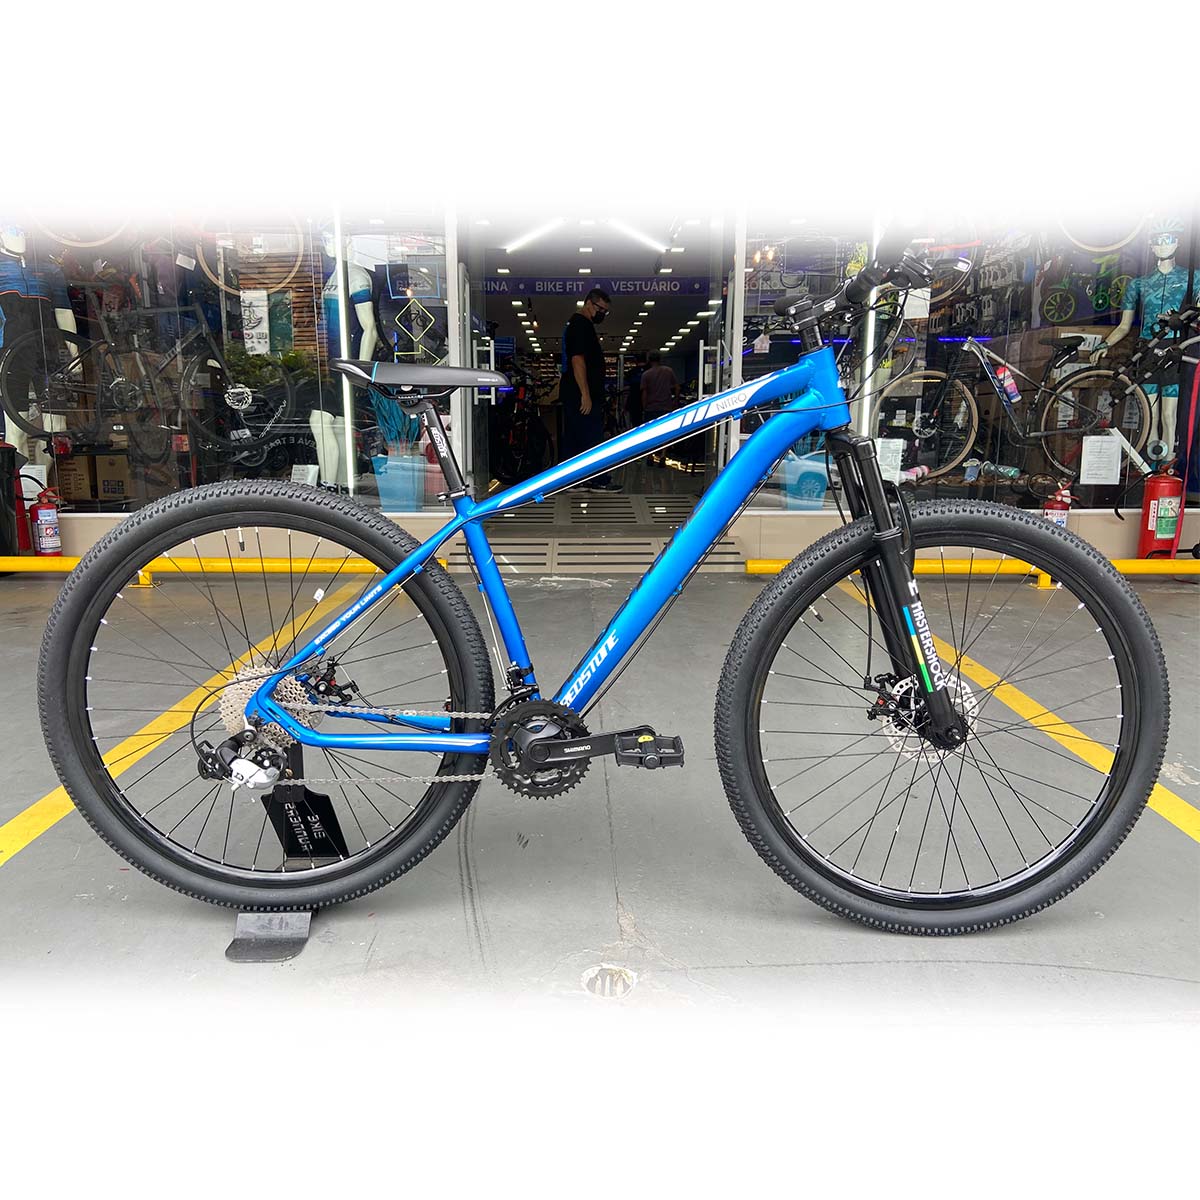 Bicicleta Redstone Nitro Shimano Tourney 24V Freio a Disco Azul Fosca